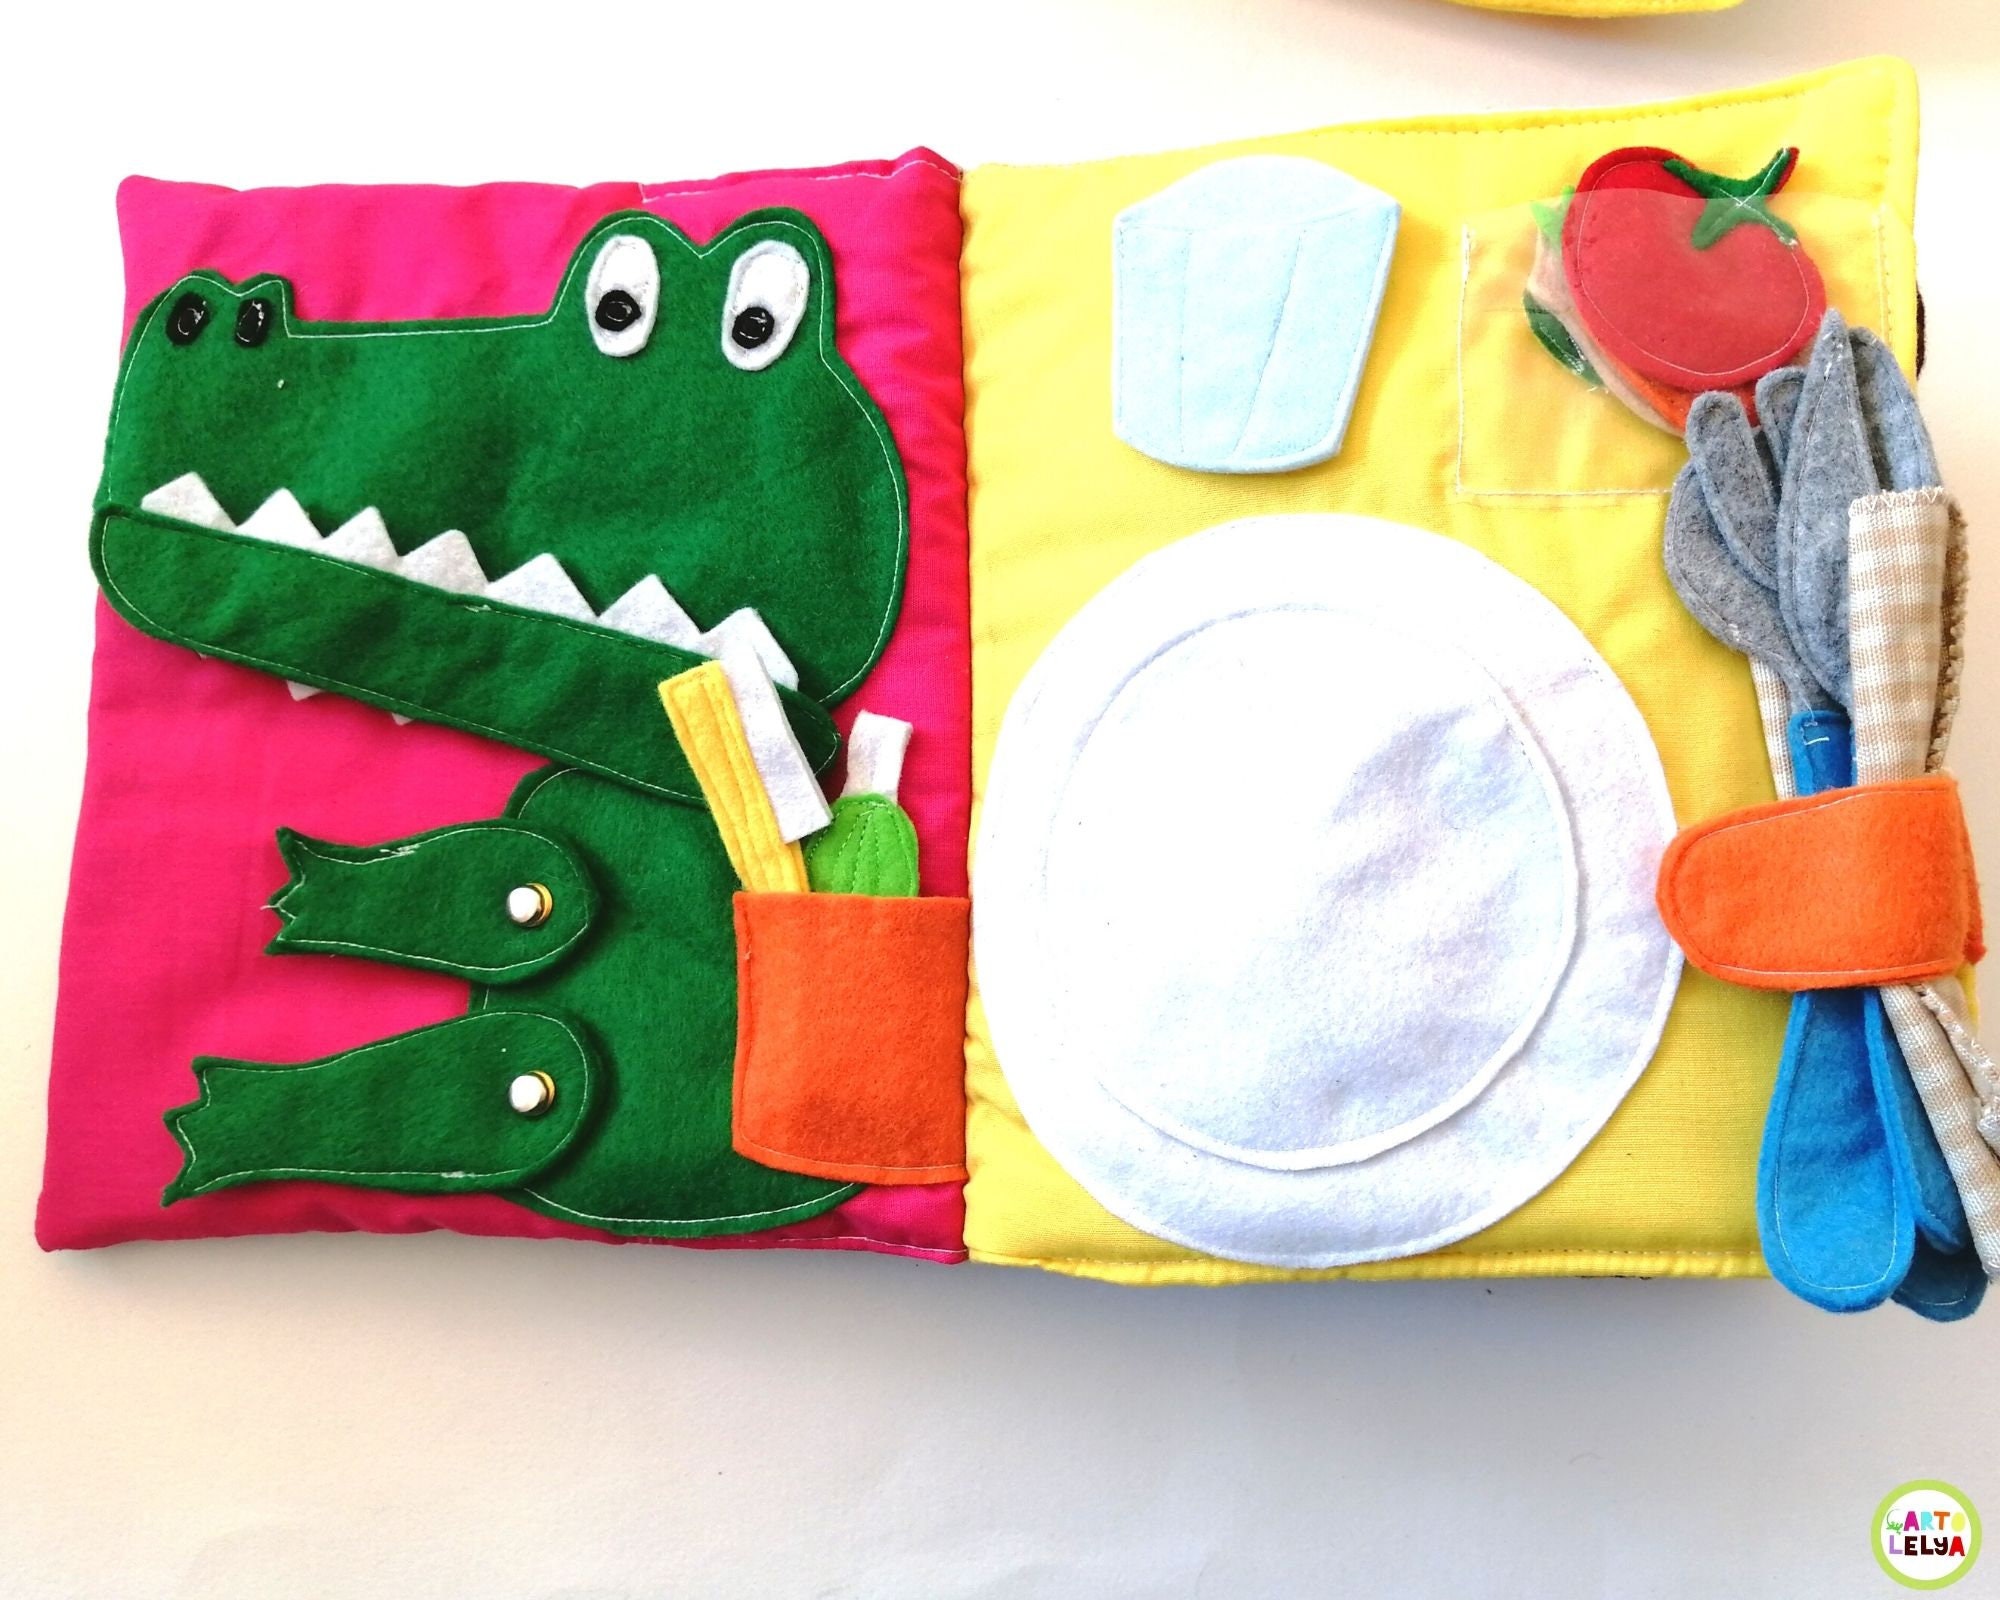 Libro tranquilo 1 año 2 años, juego sensorial para niños de 1 año, libro  táctil con animales, dinosaurios y leones de colores -  México